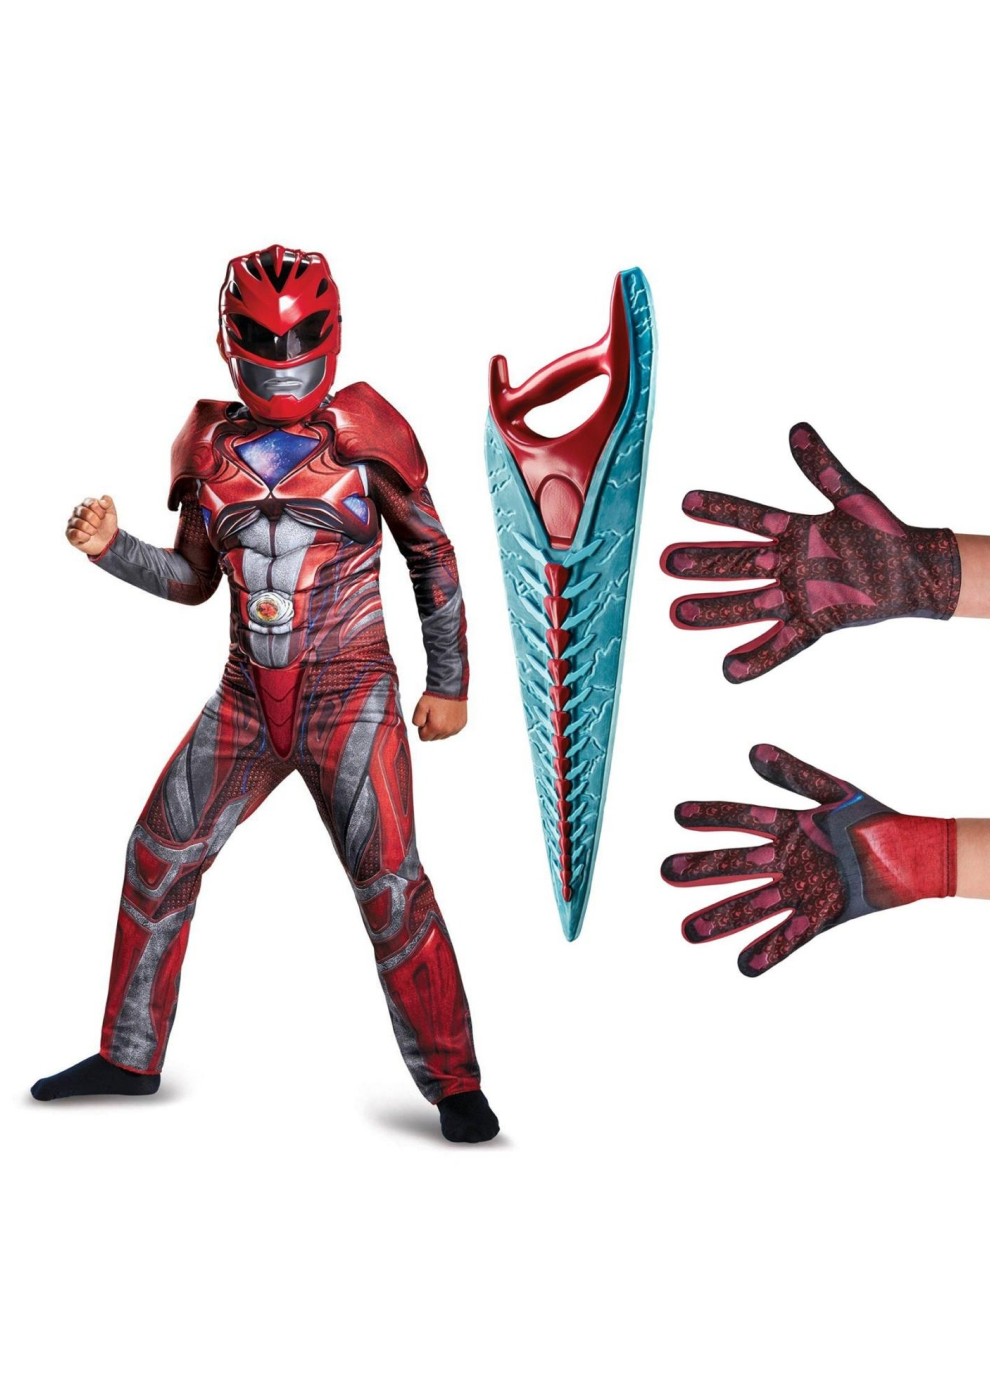 Boys Red Power Ranger Costume Kit